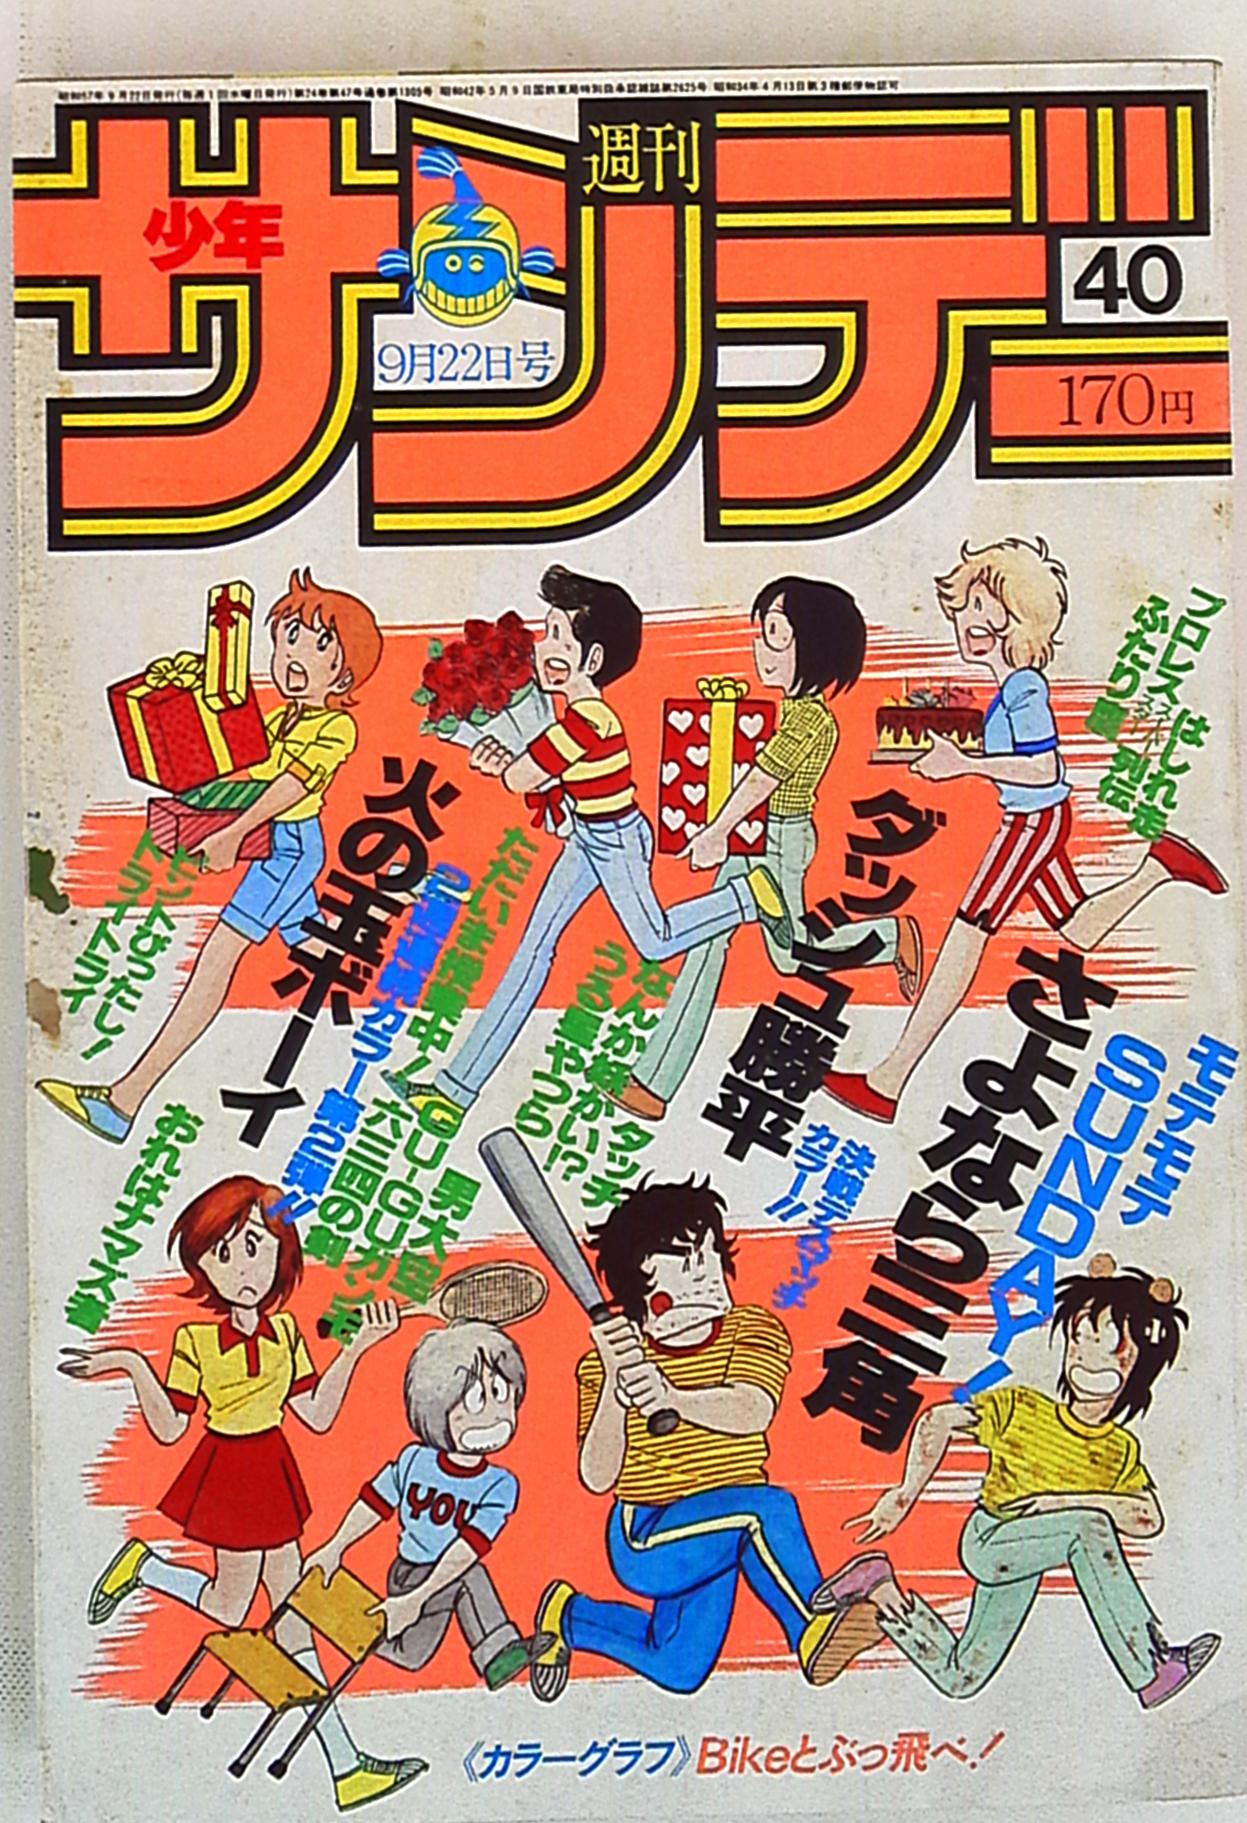 小学館 1982年(昭和57年)の漫画雑誌 週刊少年サンデー1982年(昭和57年 